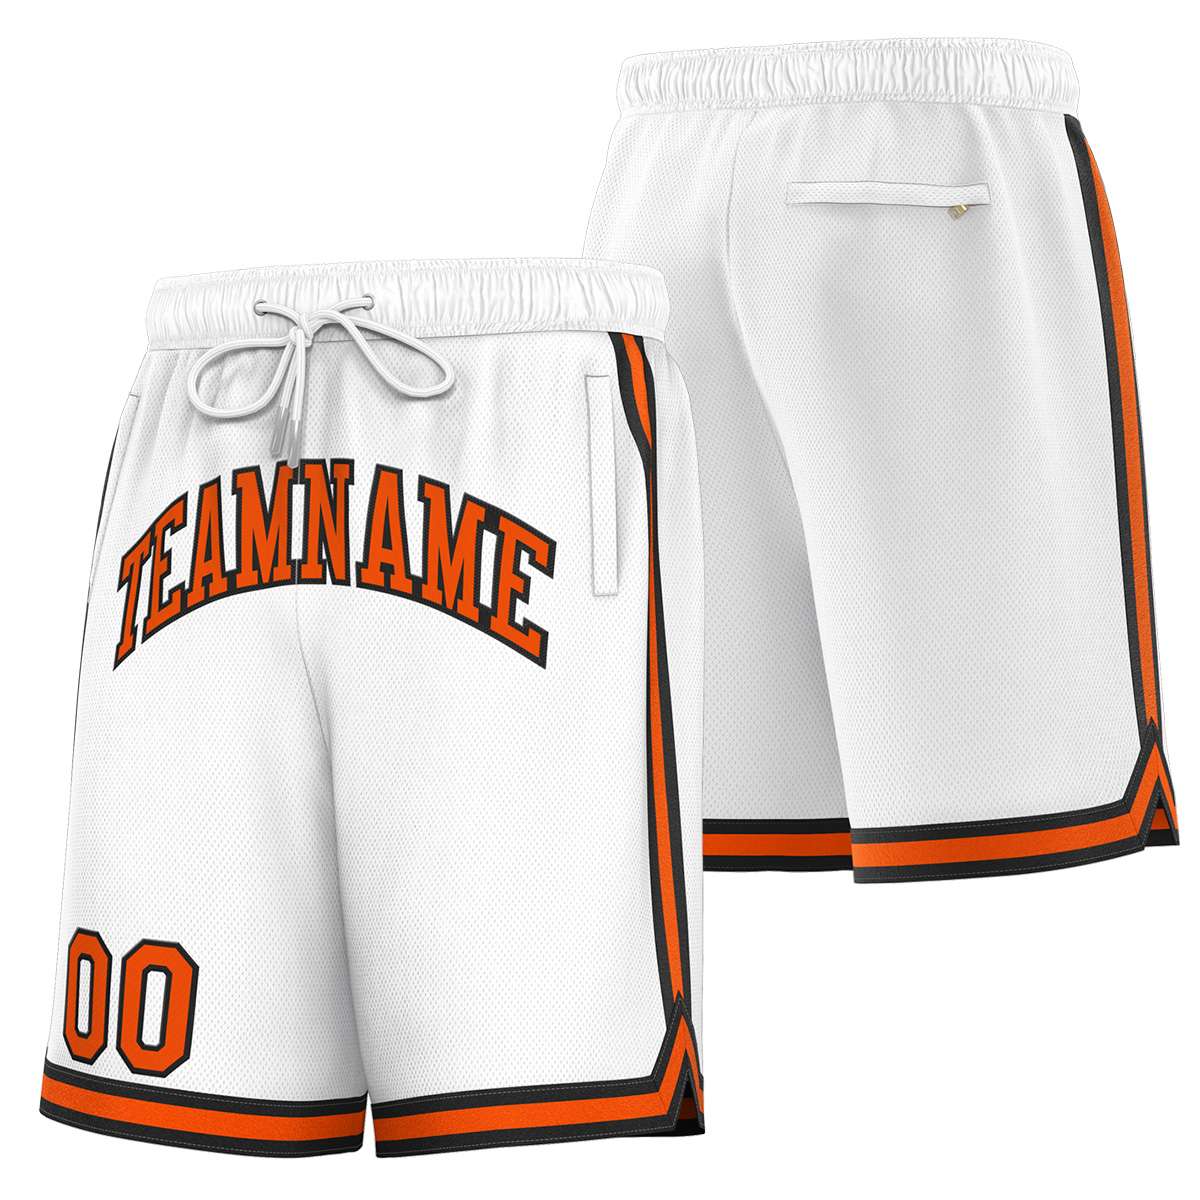 Black And Orange Basketball Shorts 